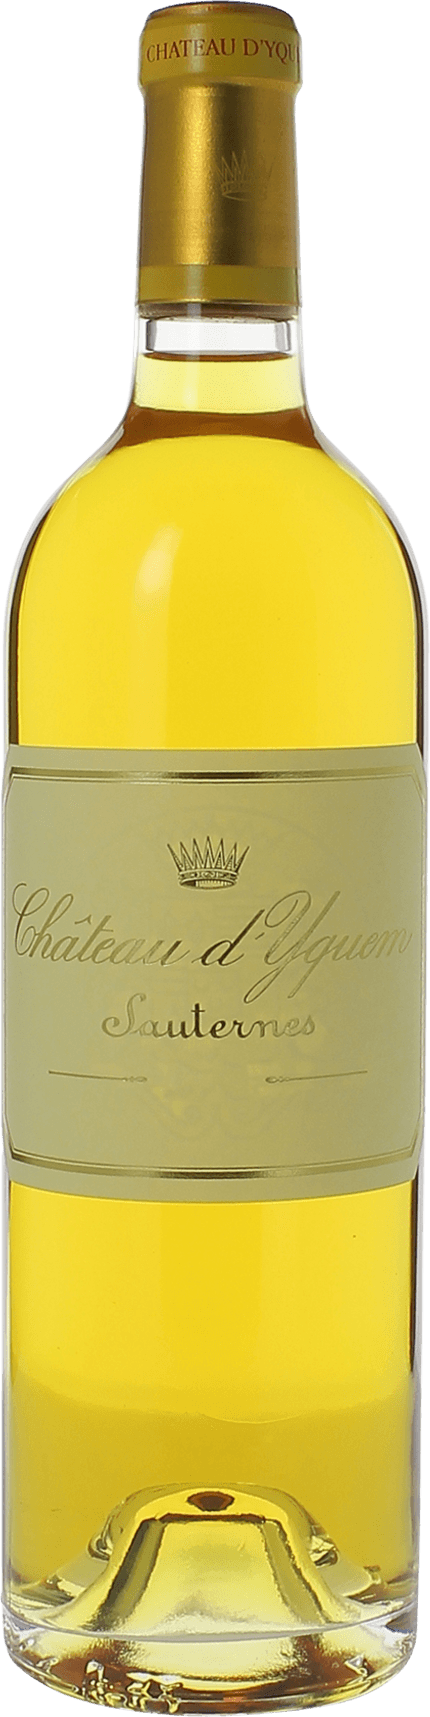 Yquem 1996 1er Grand cru class Sauternes, Bordeaux blanc